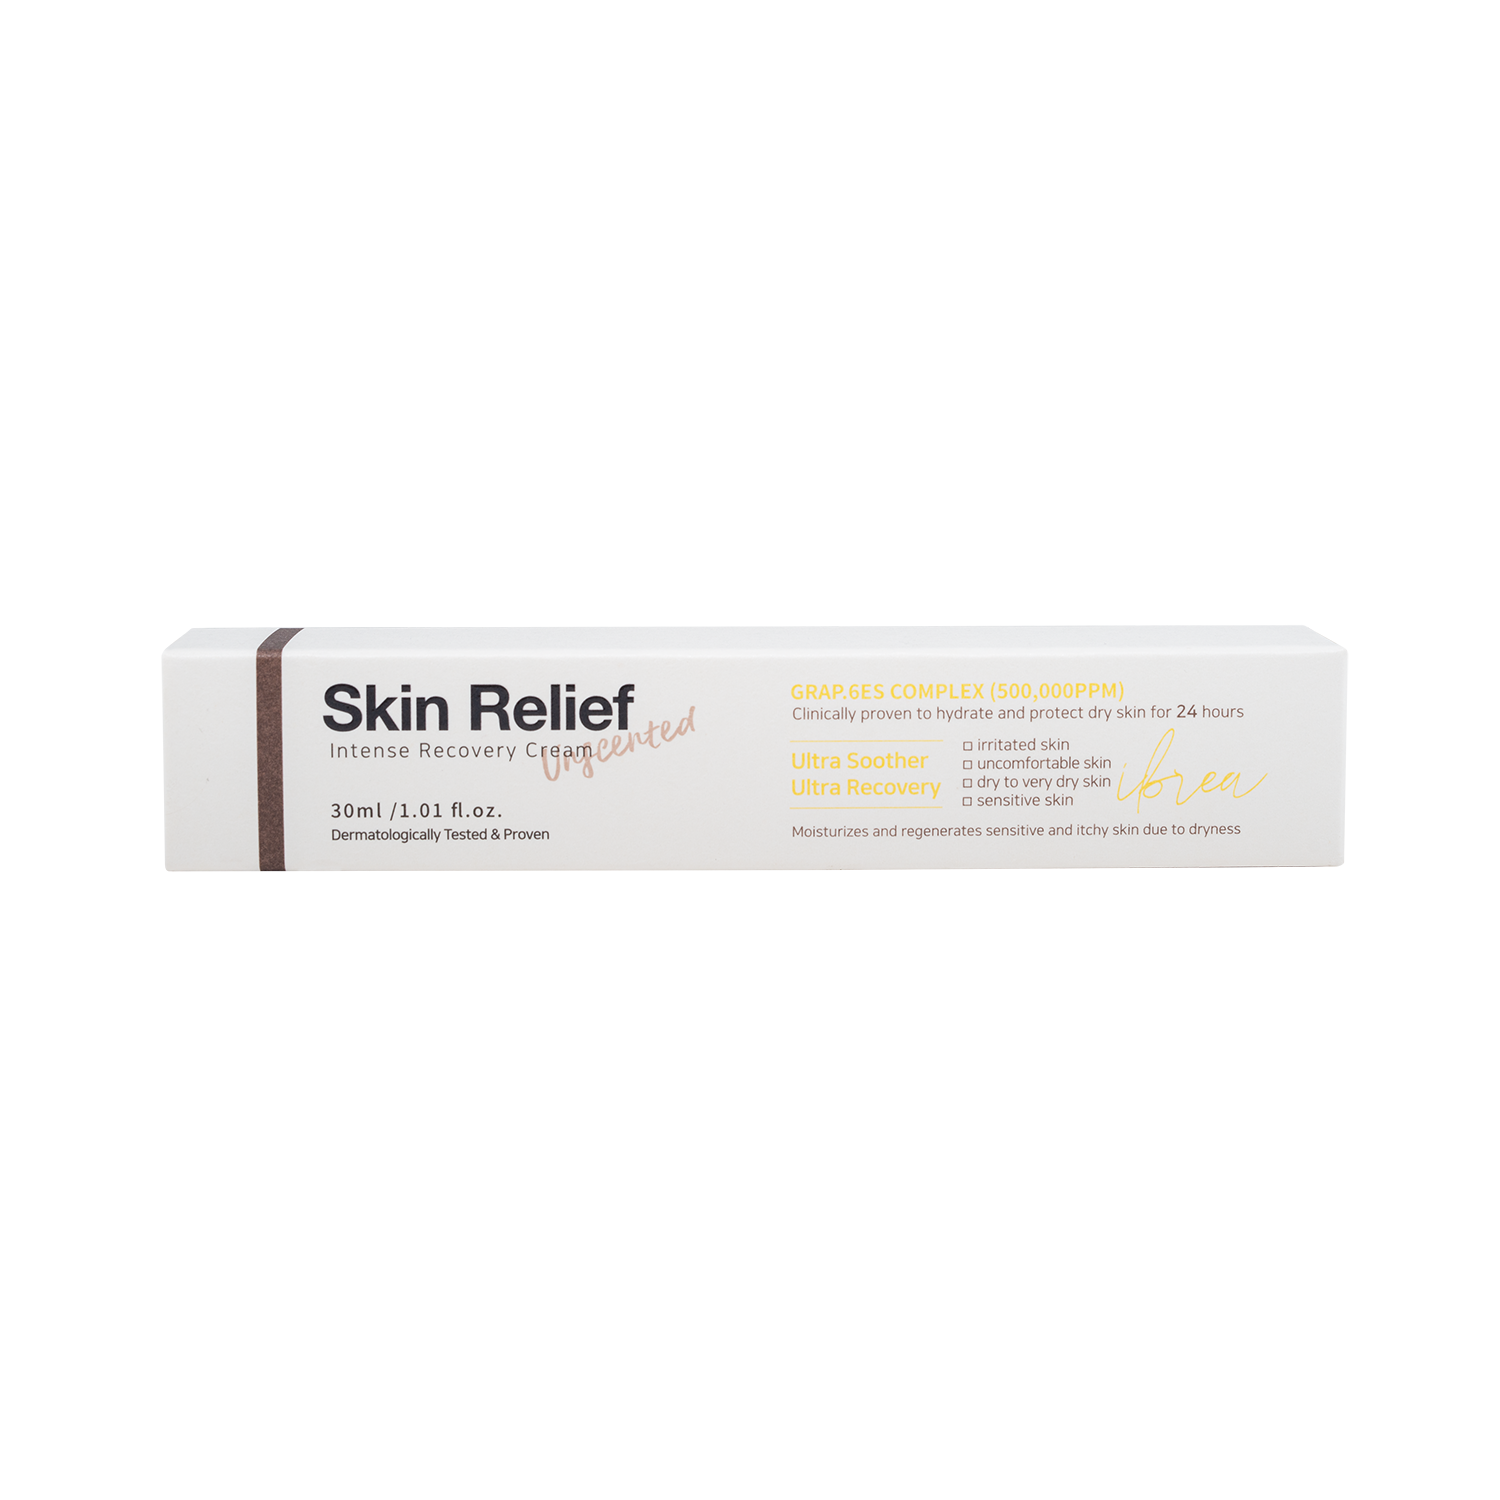 Skin Relief 碳素水强效修復保濕霜 30ml (半價貨品: 最佳使用日期至2023年10月)